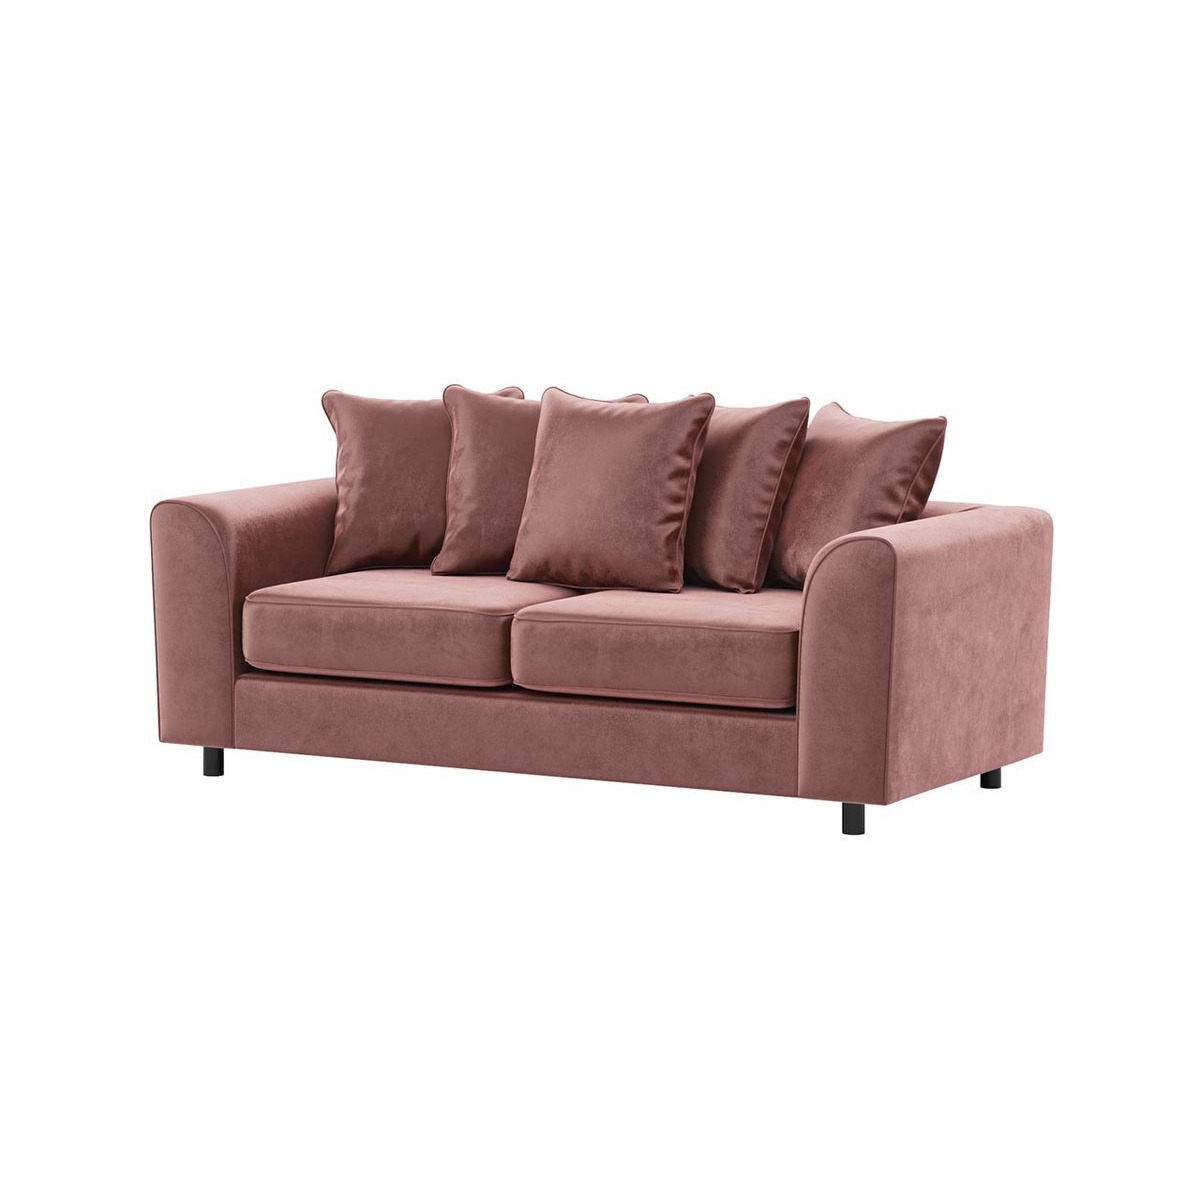 Dillon Velvet 3 Seater Sofa, dirty pink - image 1